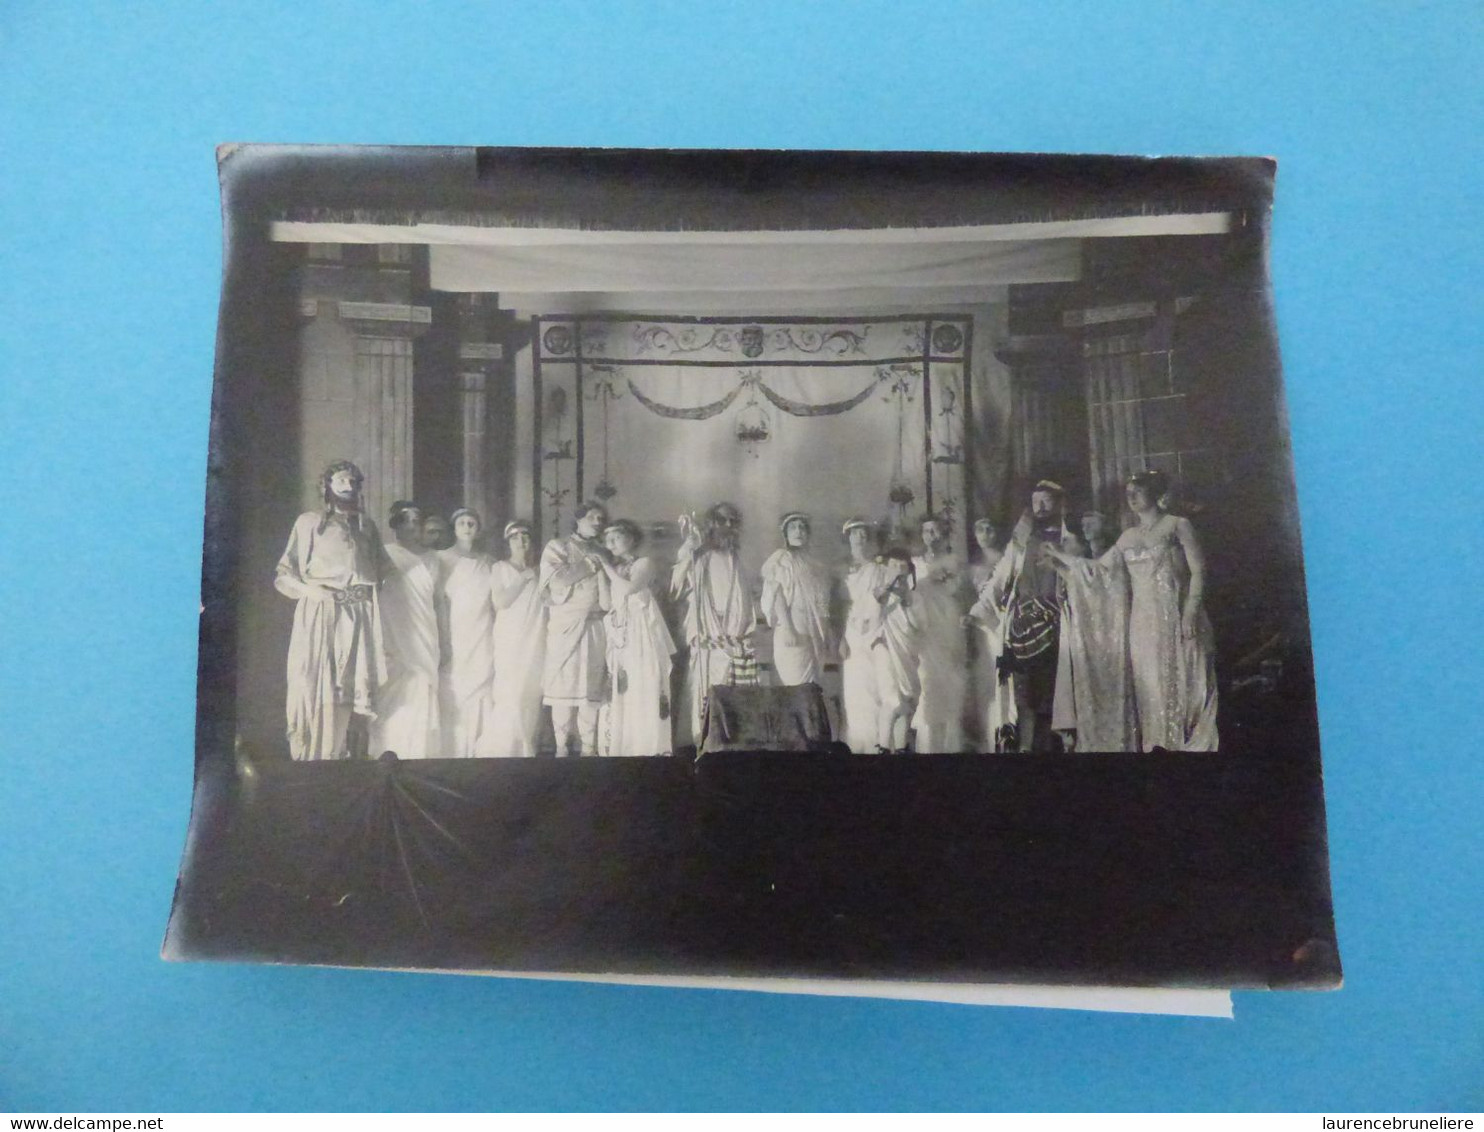 PHOTO ALBUMINEE - 44 NANTES ECOLE DES BEAUX-ARTS (THEATRE) - 1913 - Lieux